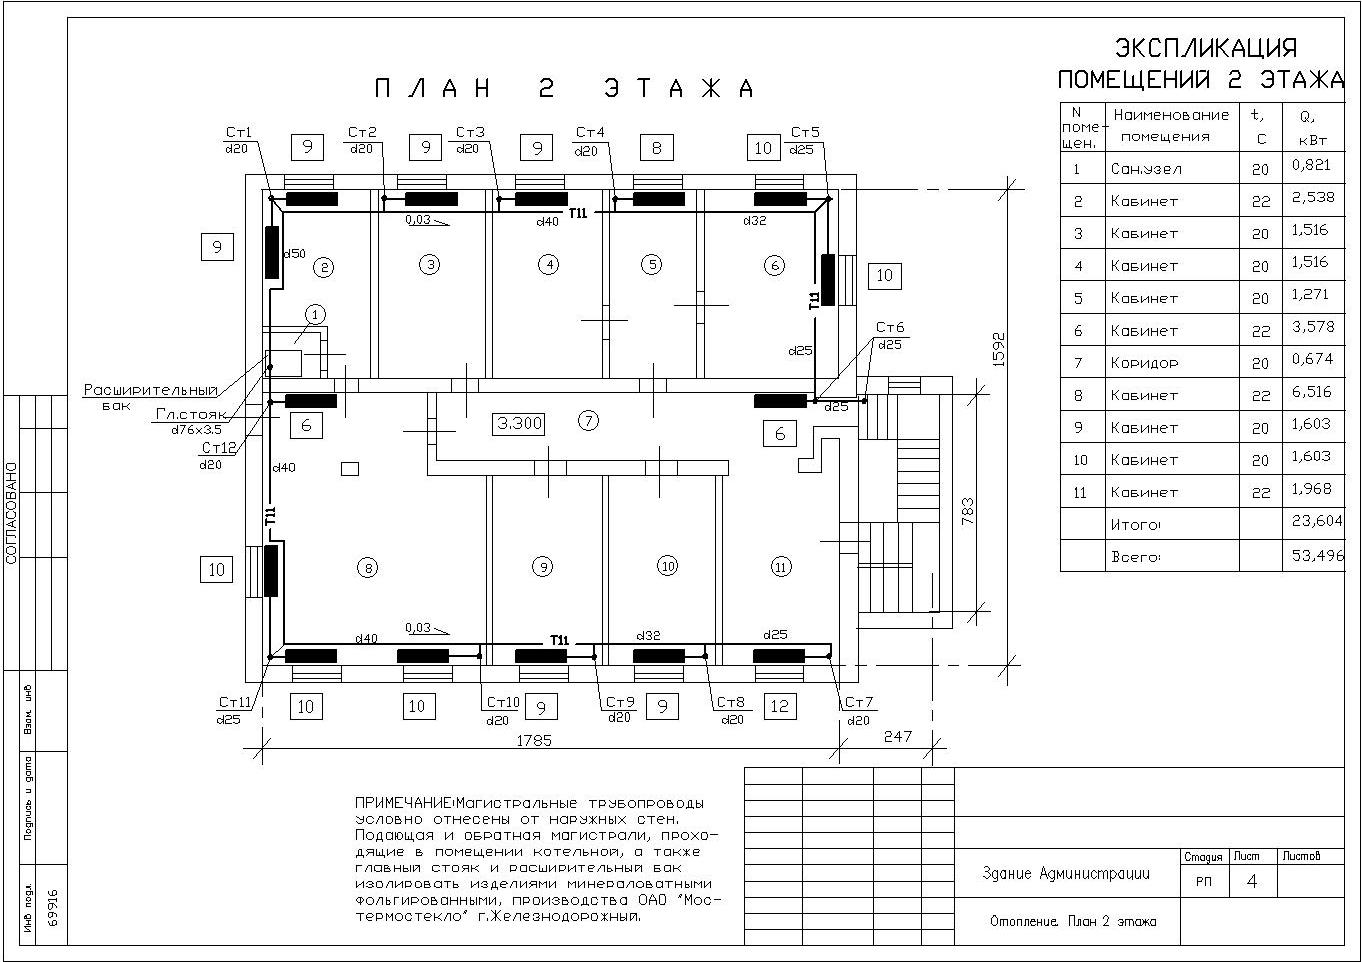 Двухтрубная система отопления двухэтажного дома: схема, конструктивные особенности